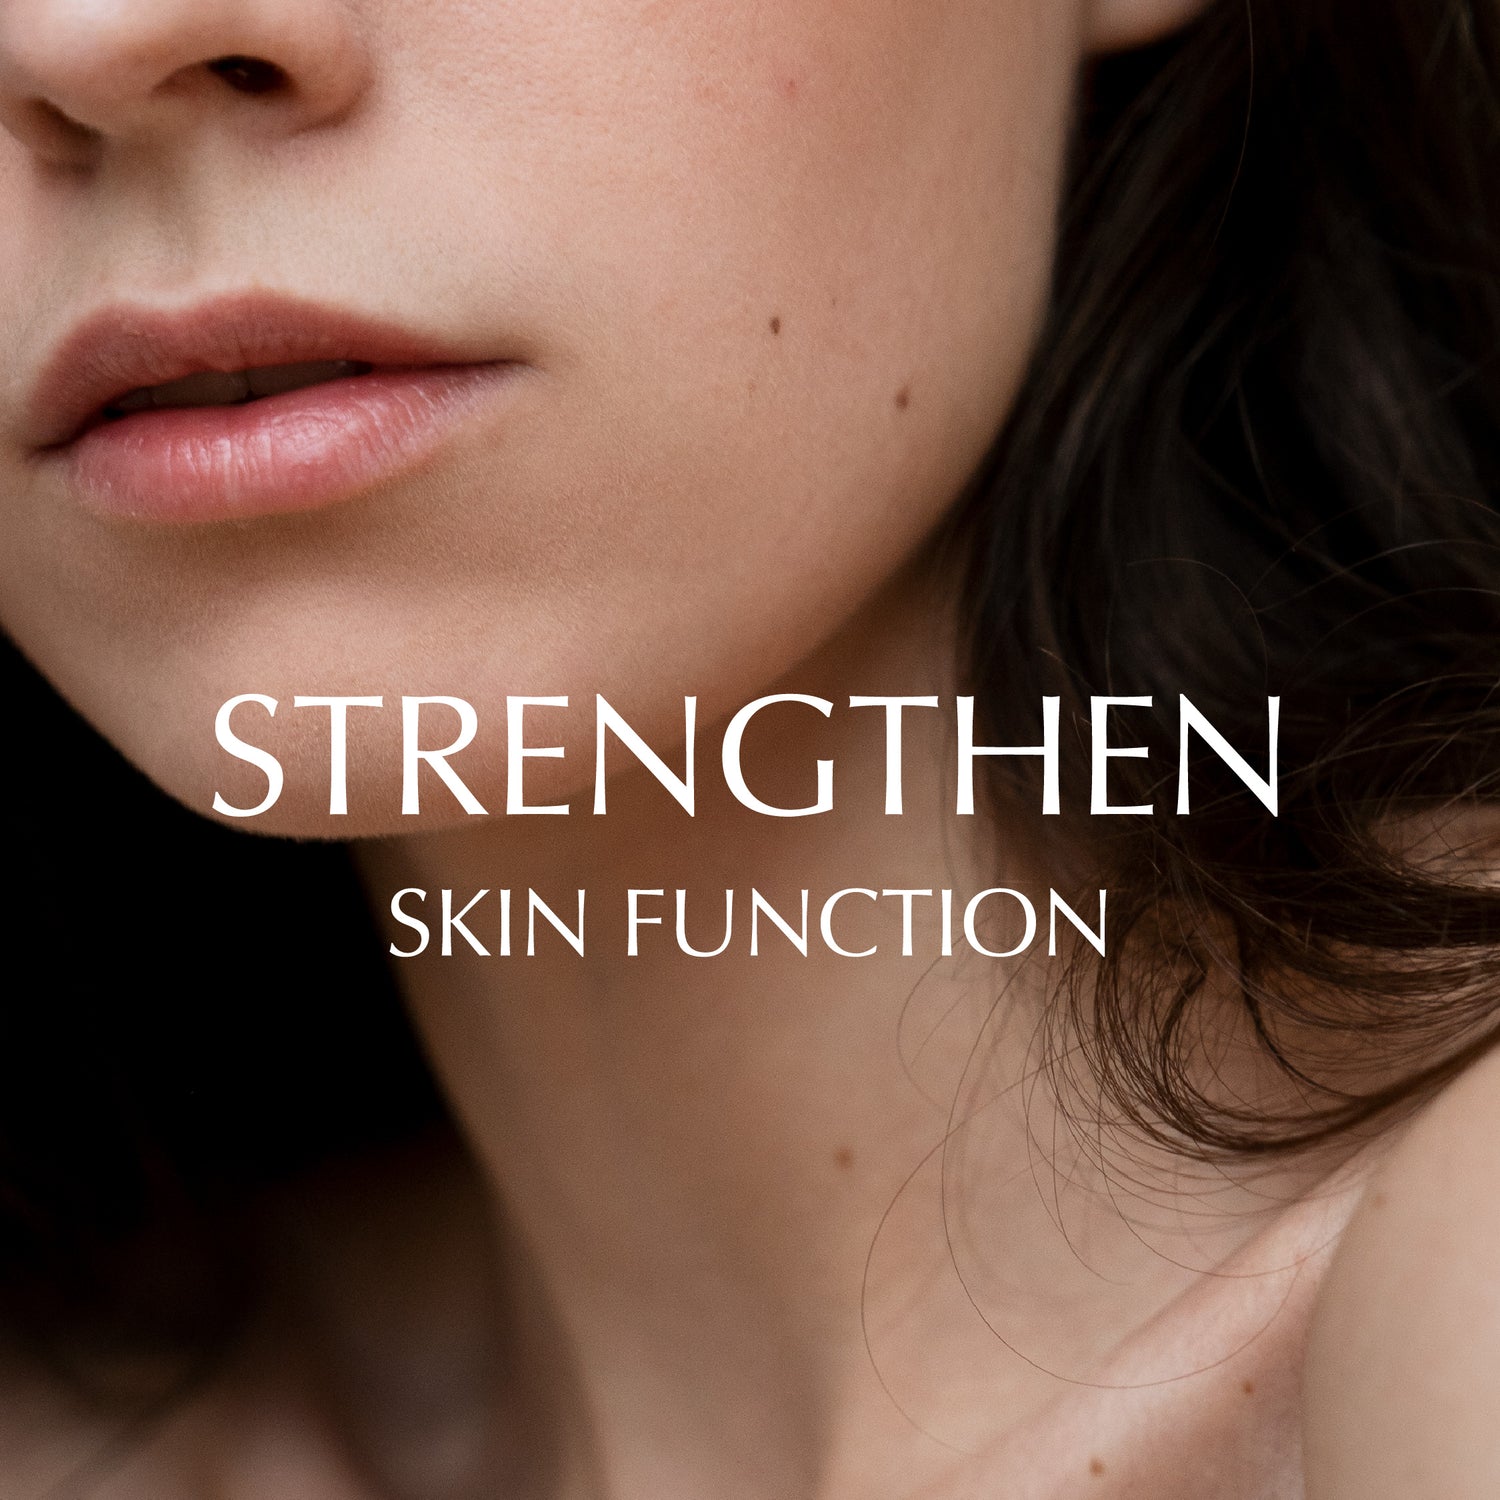 Strengthen Skin Function